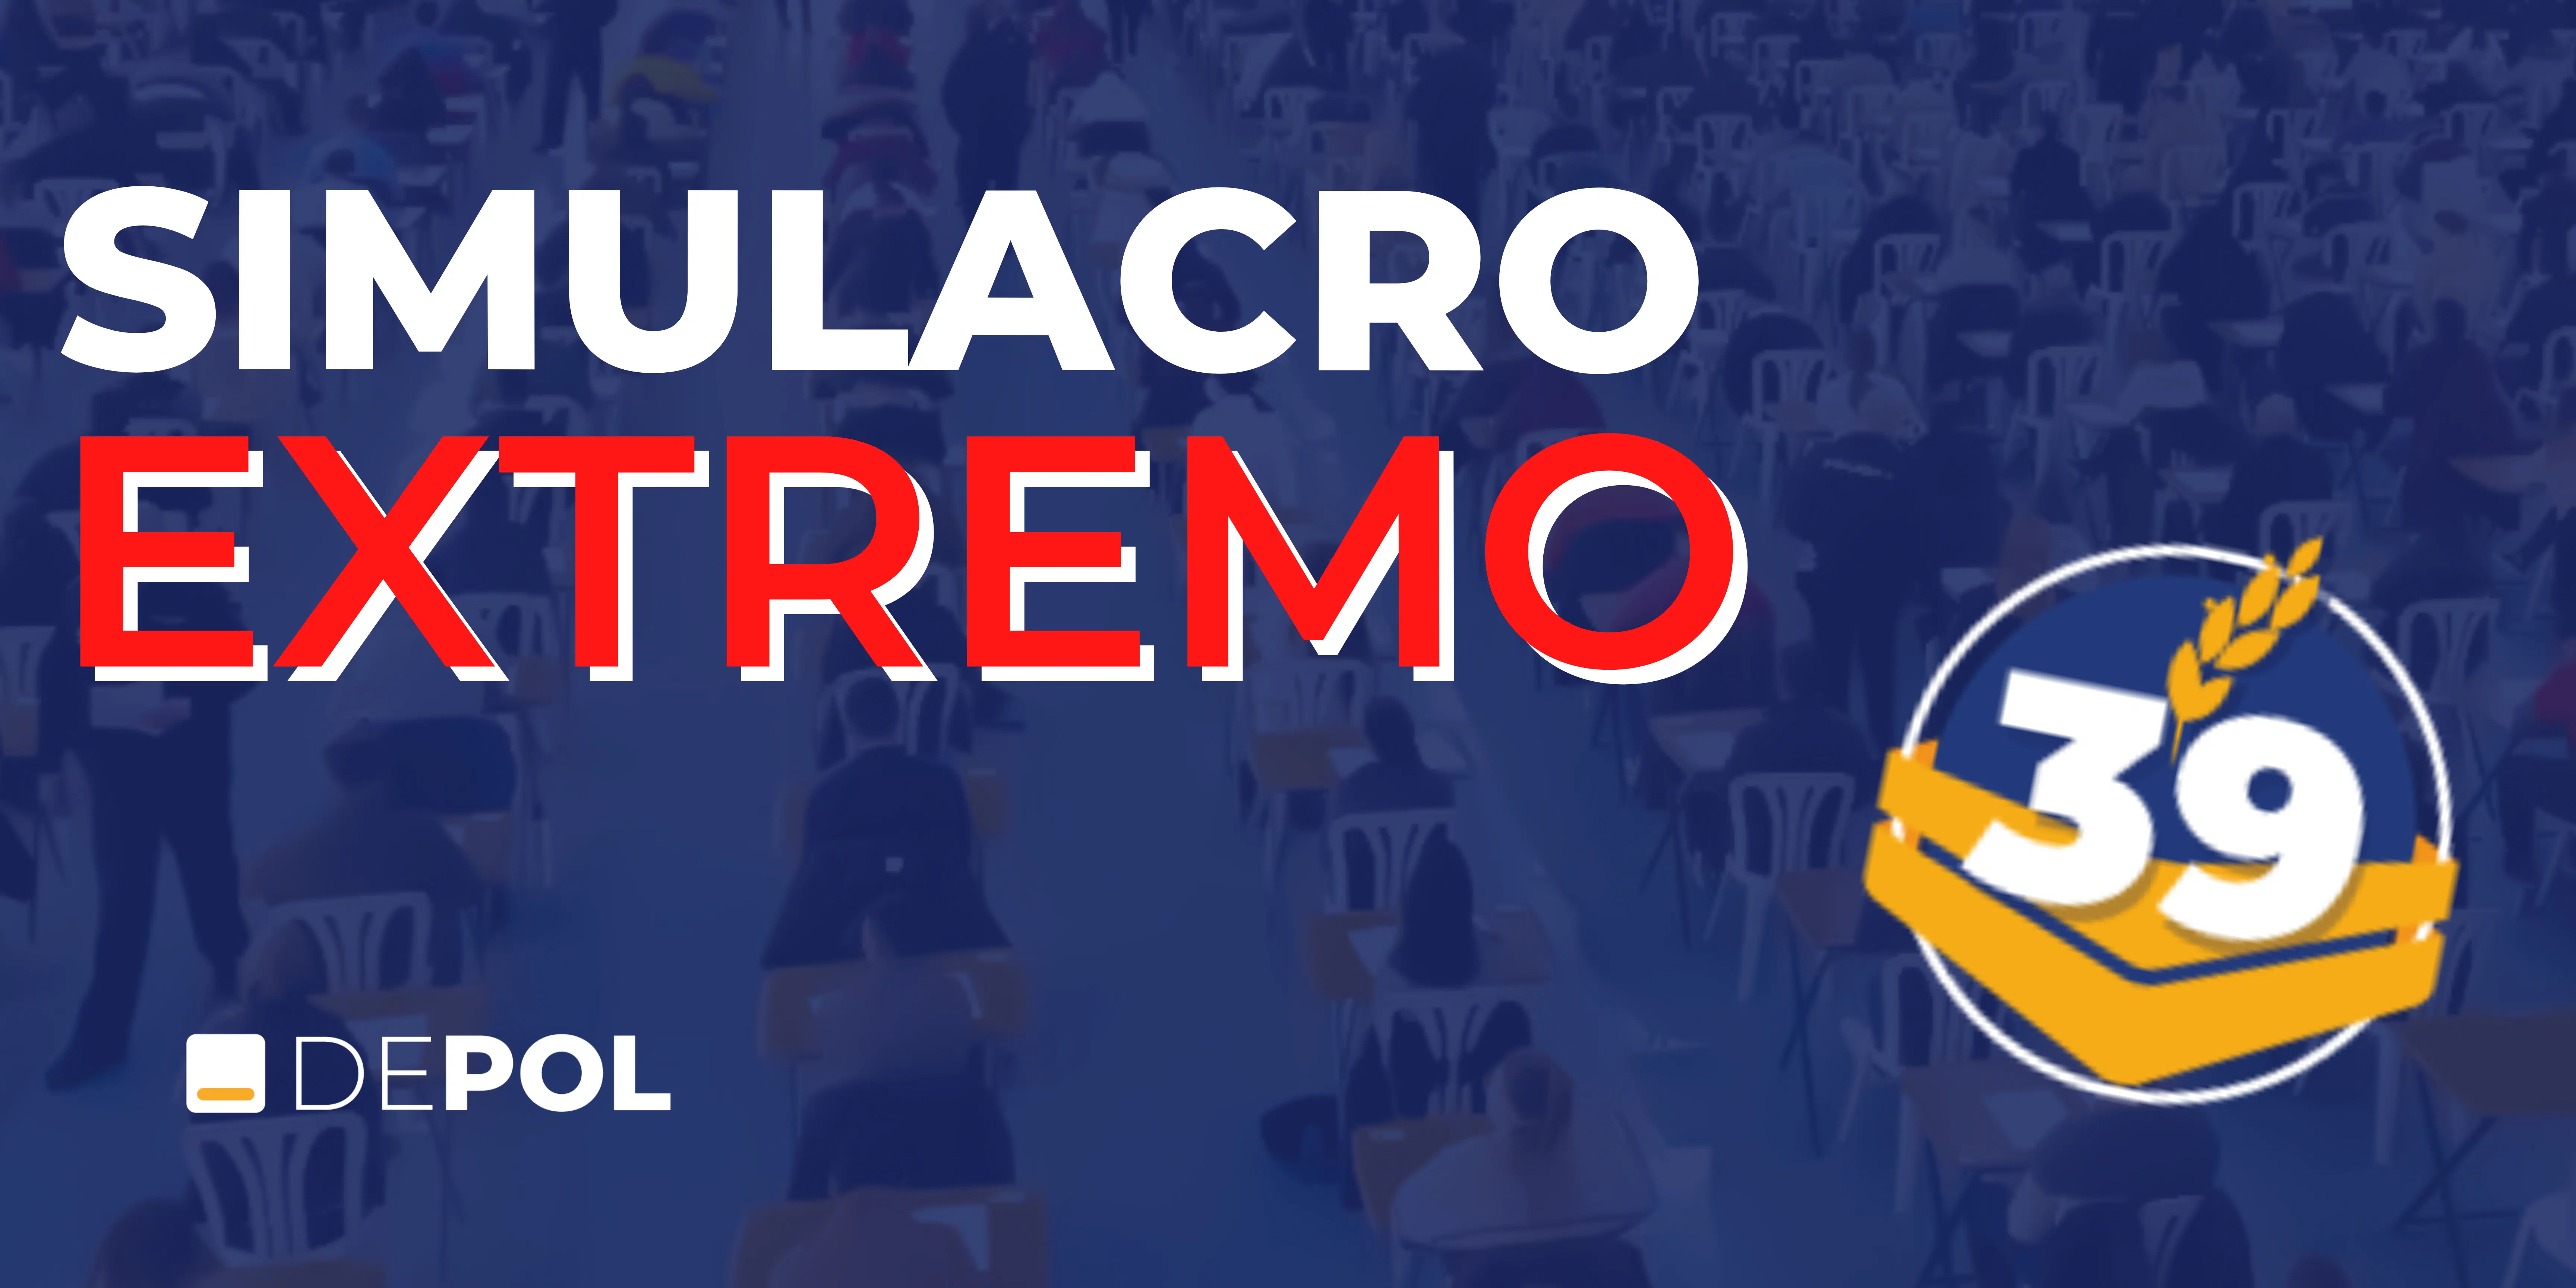 DEPOL organiza un Simulacro Extremo el 18 de febrero para alumnos y no alumnos